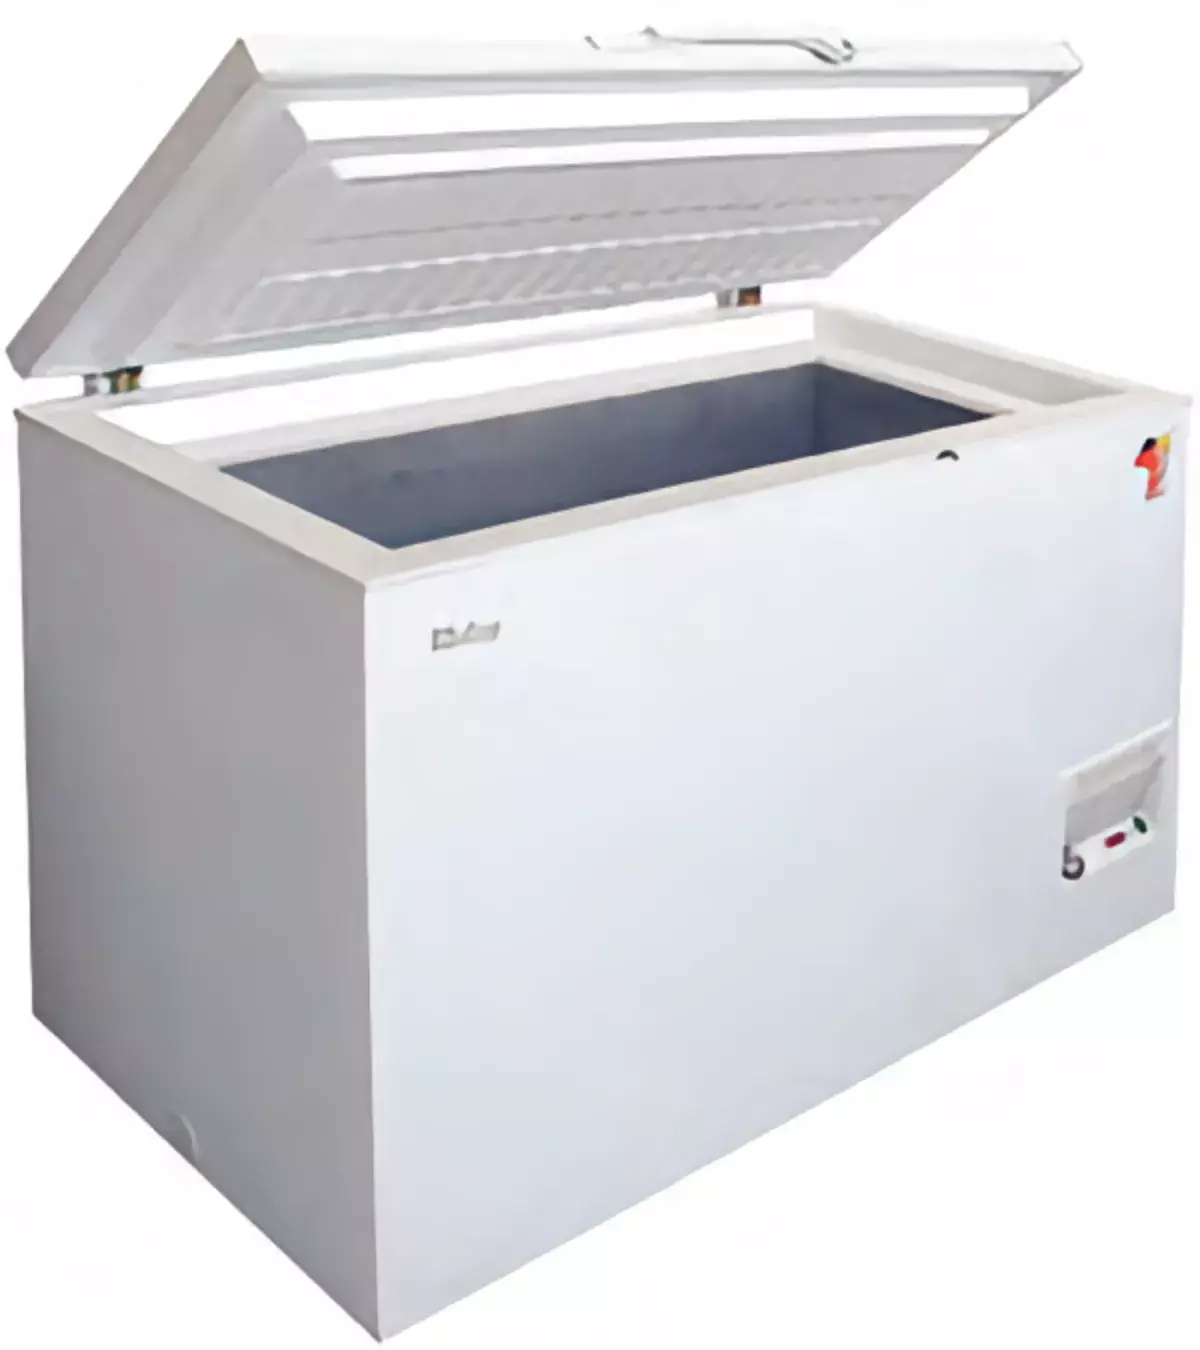 Холодильник HBC-200 с внутренней ледяной рубашкой